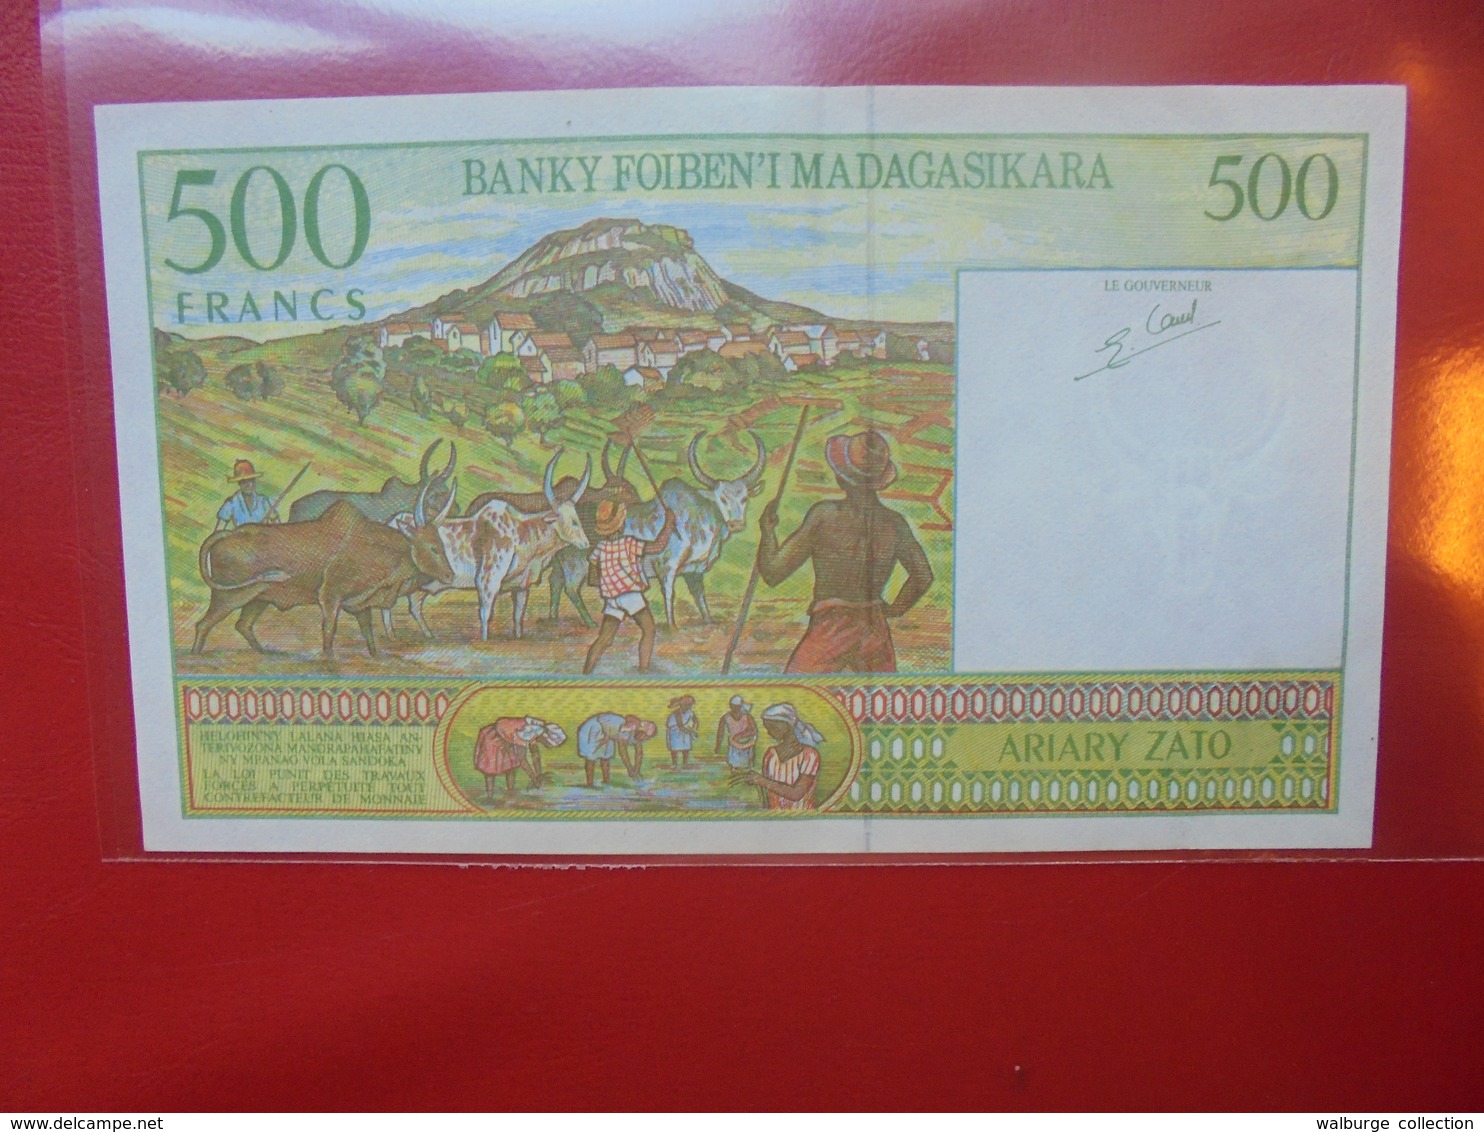 MADAGASCAR 500 FRANCS 1994 PEU CIRCULER (F.1) - Madagaskar